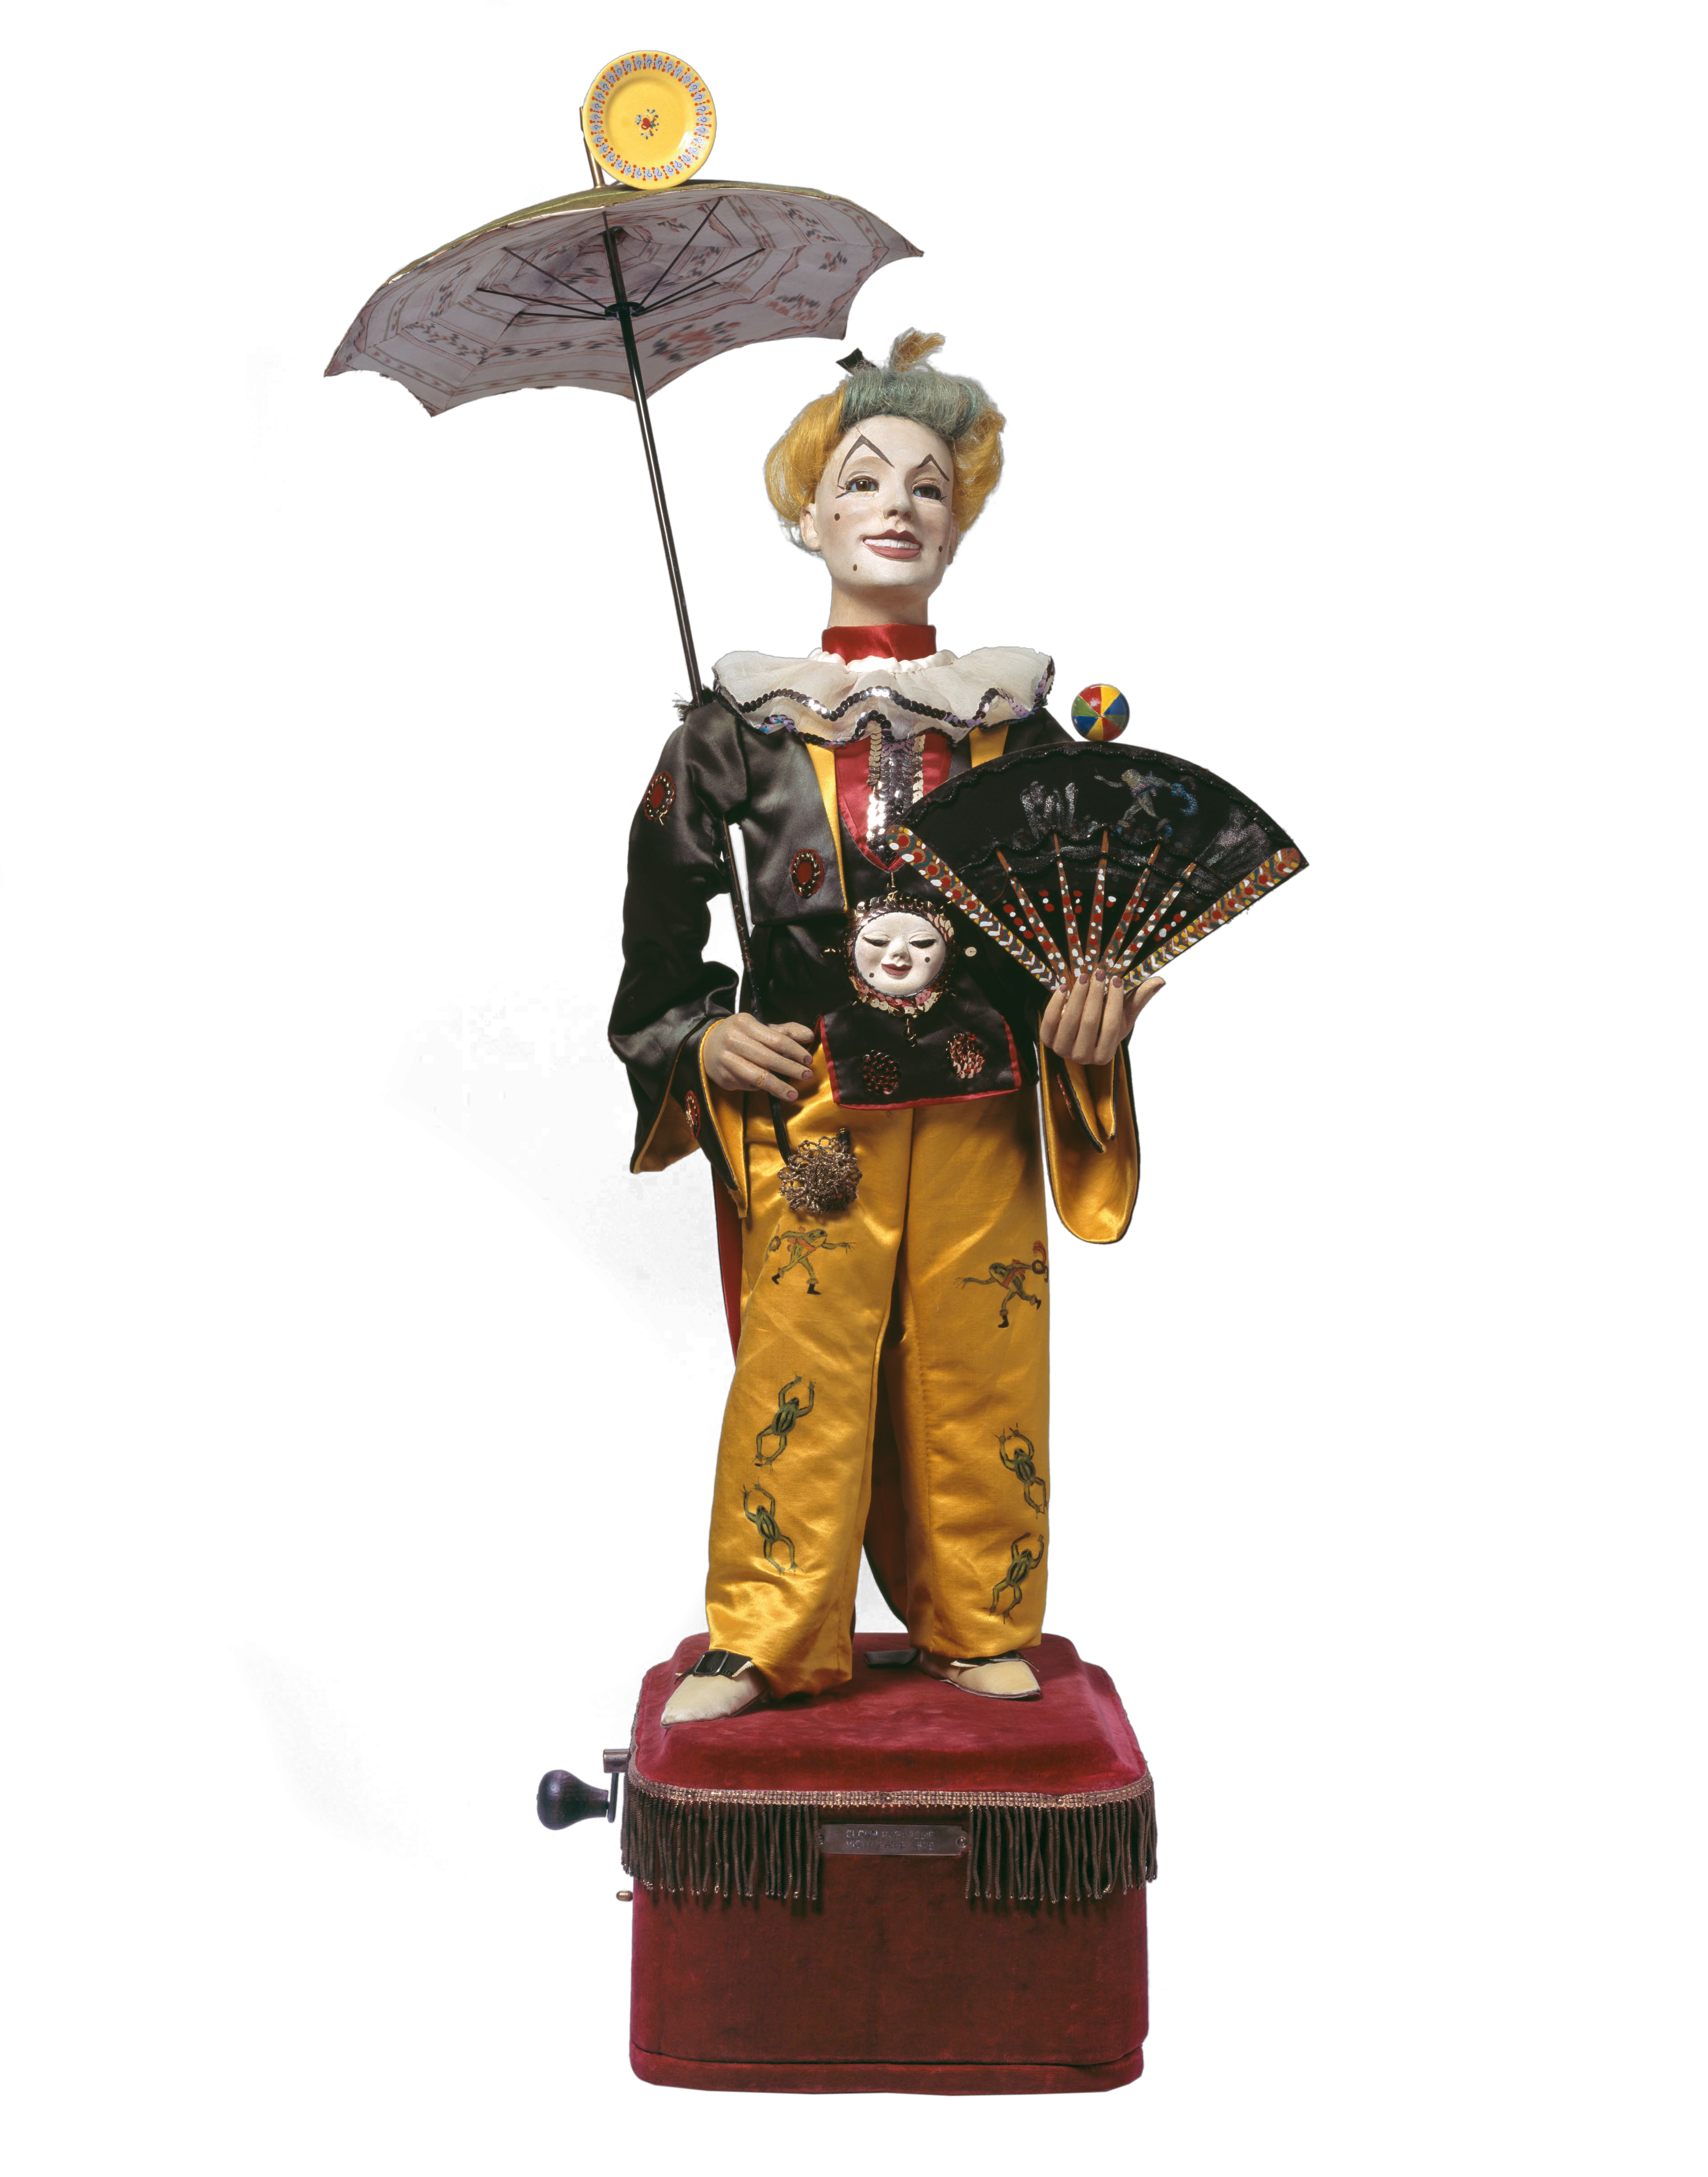 Das Bild zeigt einen Musikautomaten in Form eines Clowns mit einem Fächer in der Hand und einem Schirm in der anderen Hand.